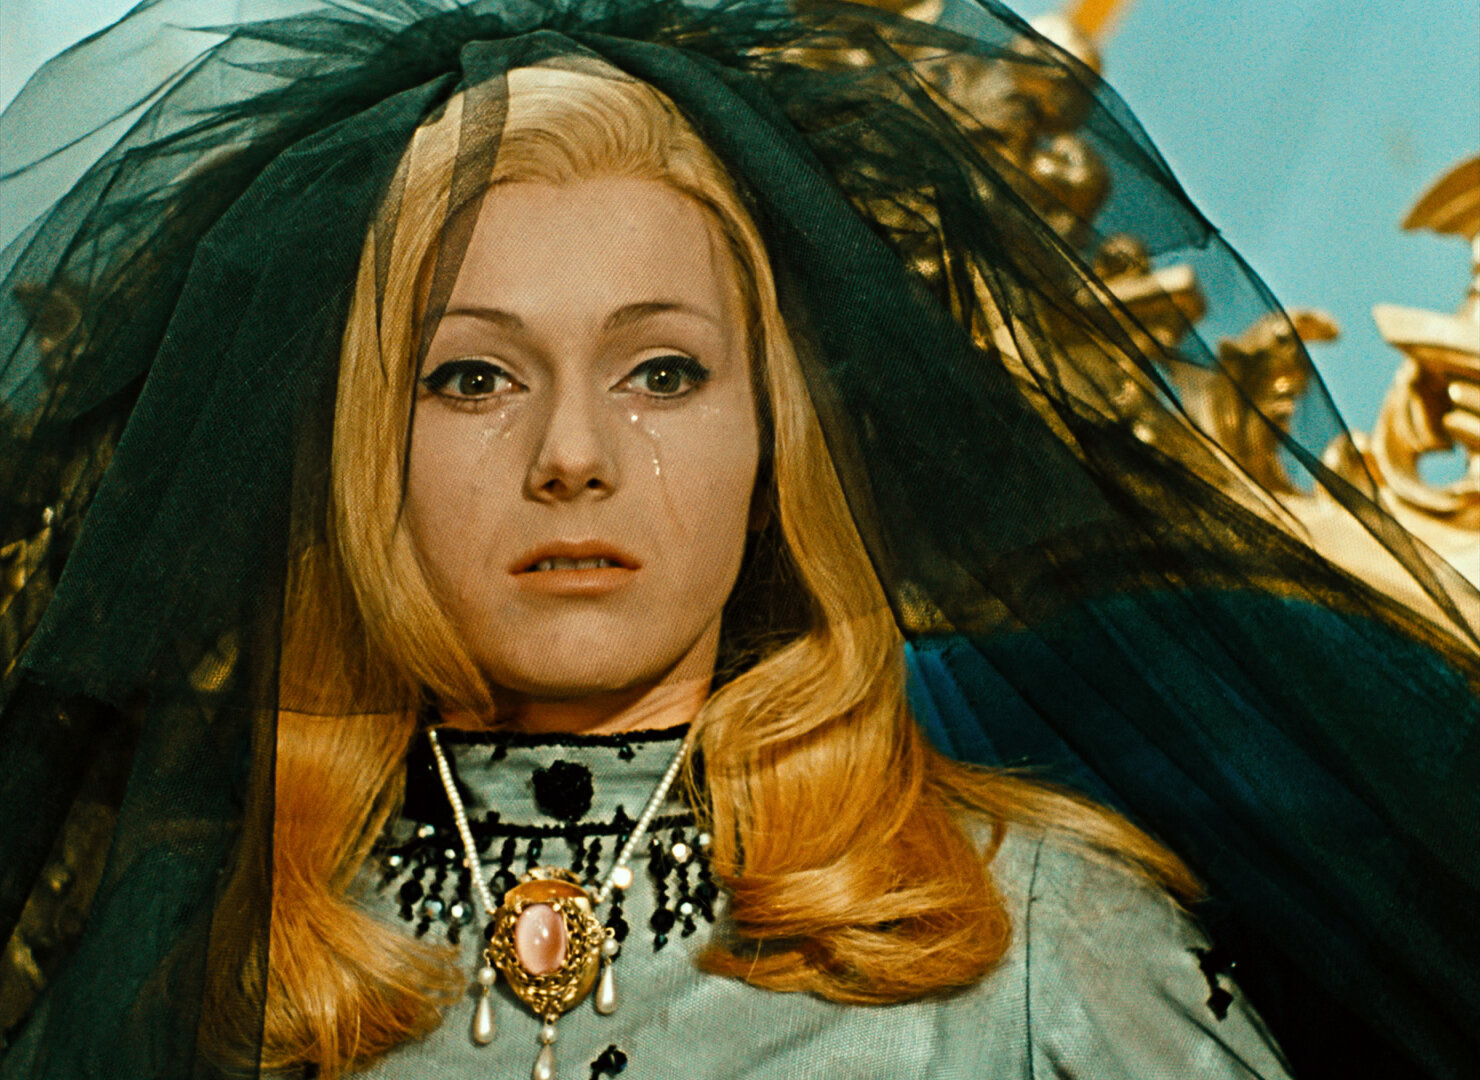 Stiahni si Filmy CZ/SK dabing Šíleně smutná princezna - 1080p (1968) = CSFD 83%